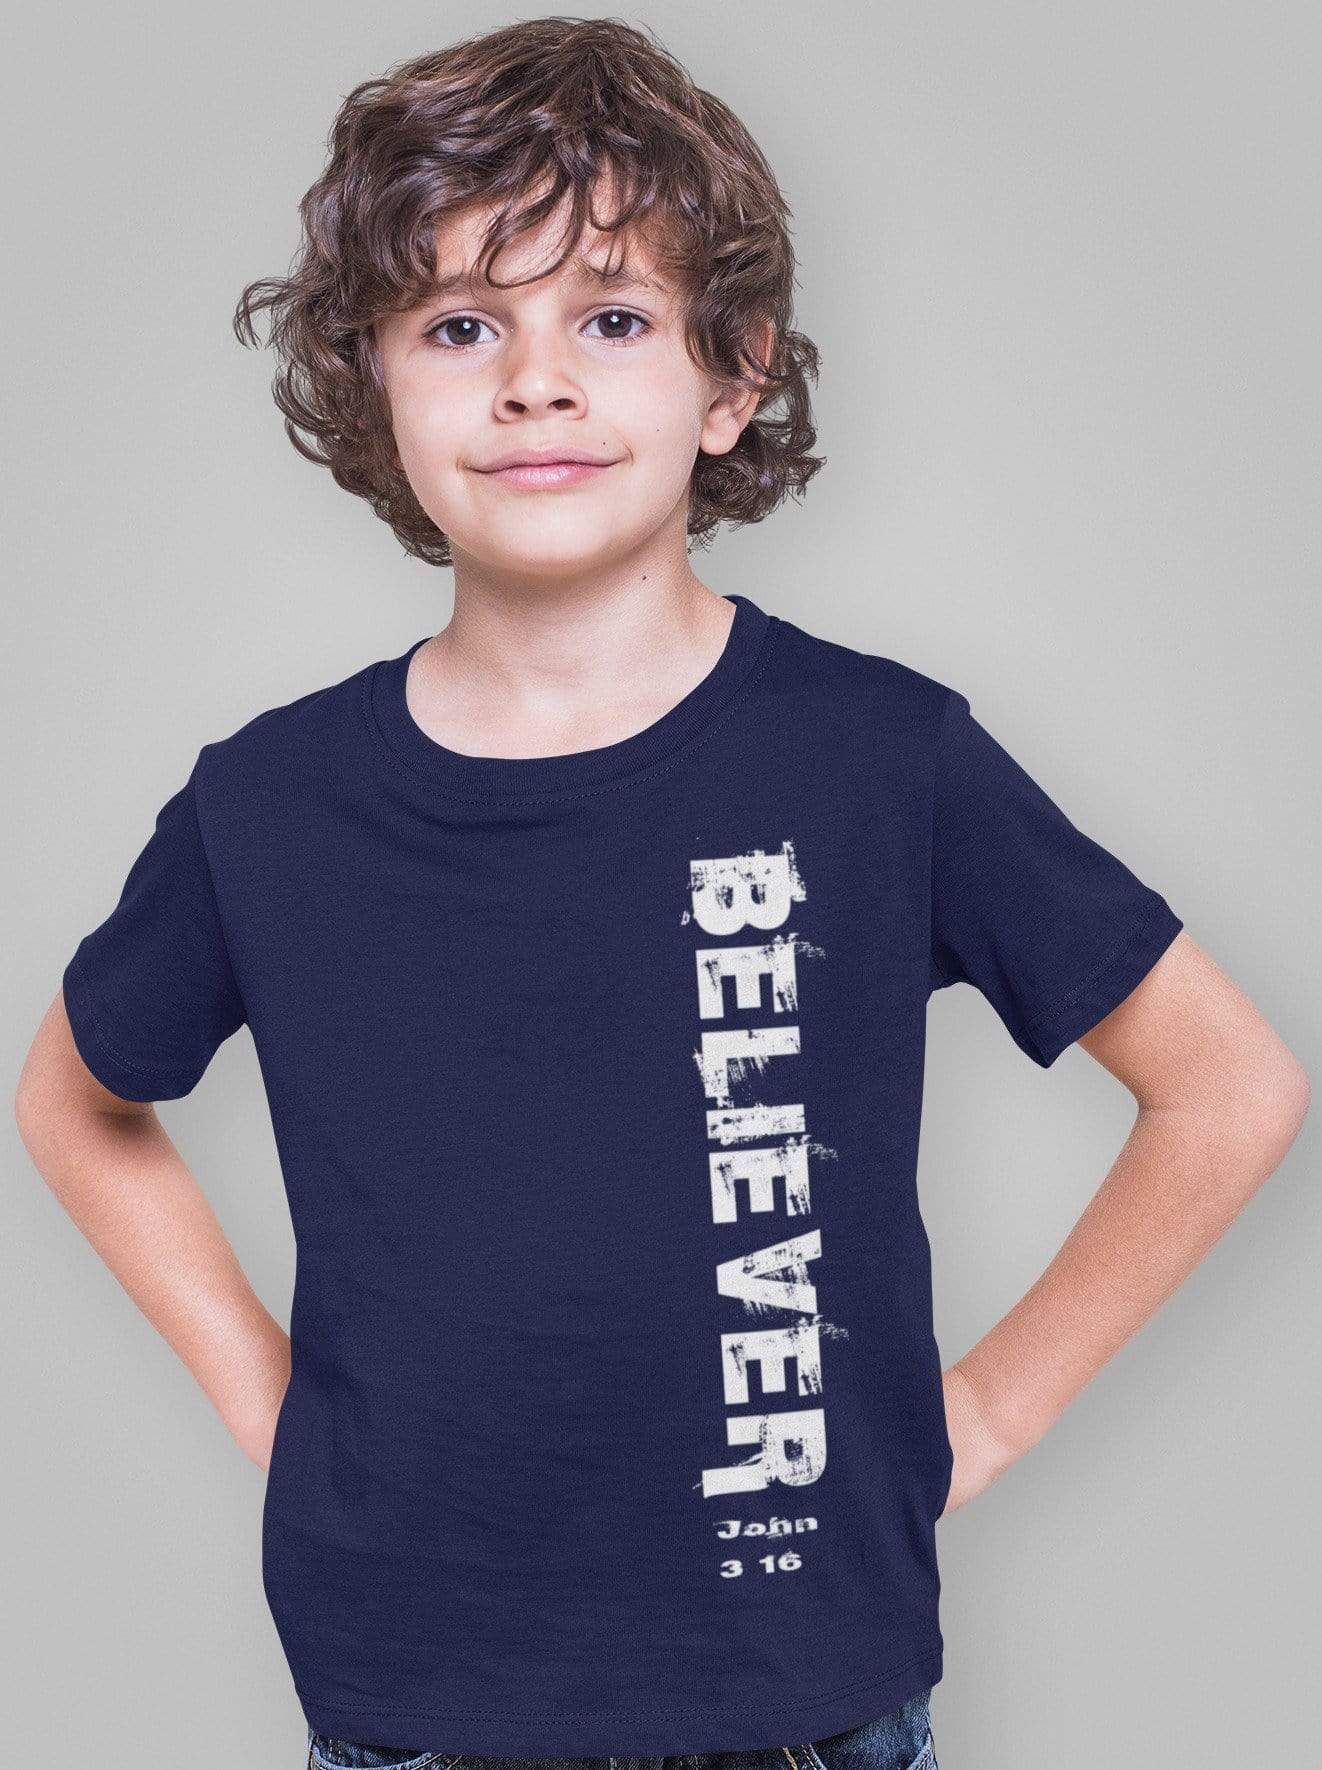 Living Words Kids Round Neck T Shirt Boy / 0-12 Mn / Navy Blue Believer